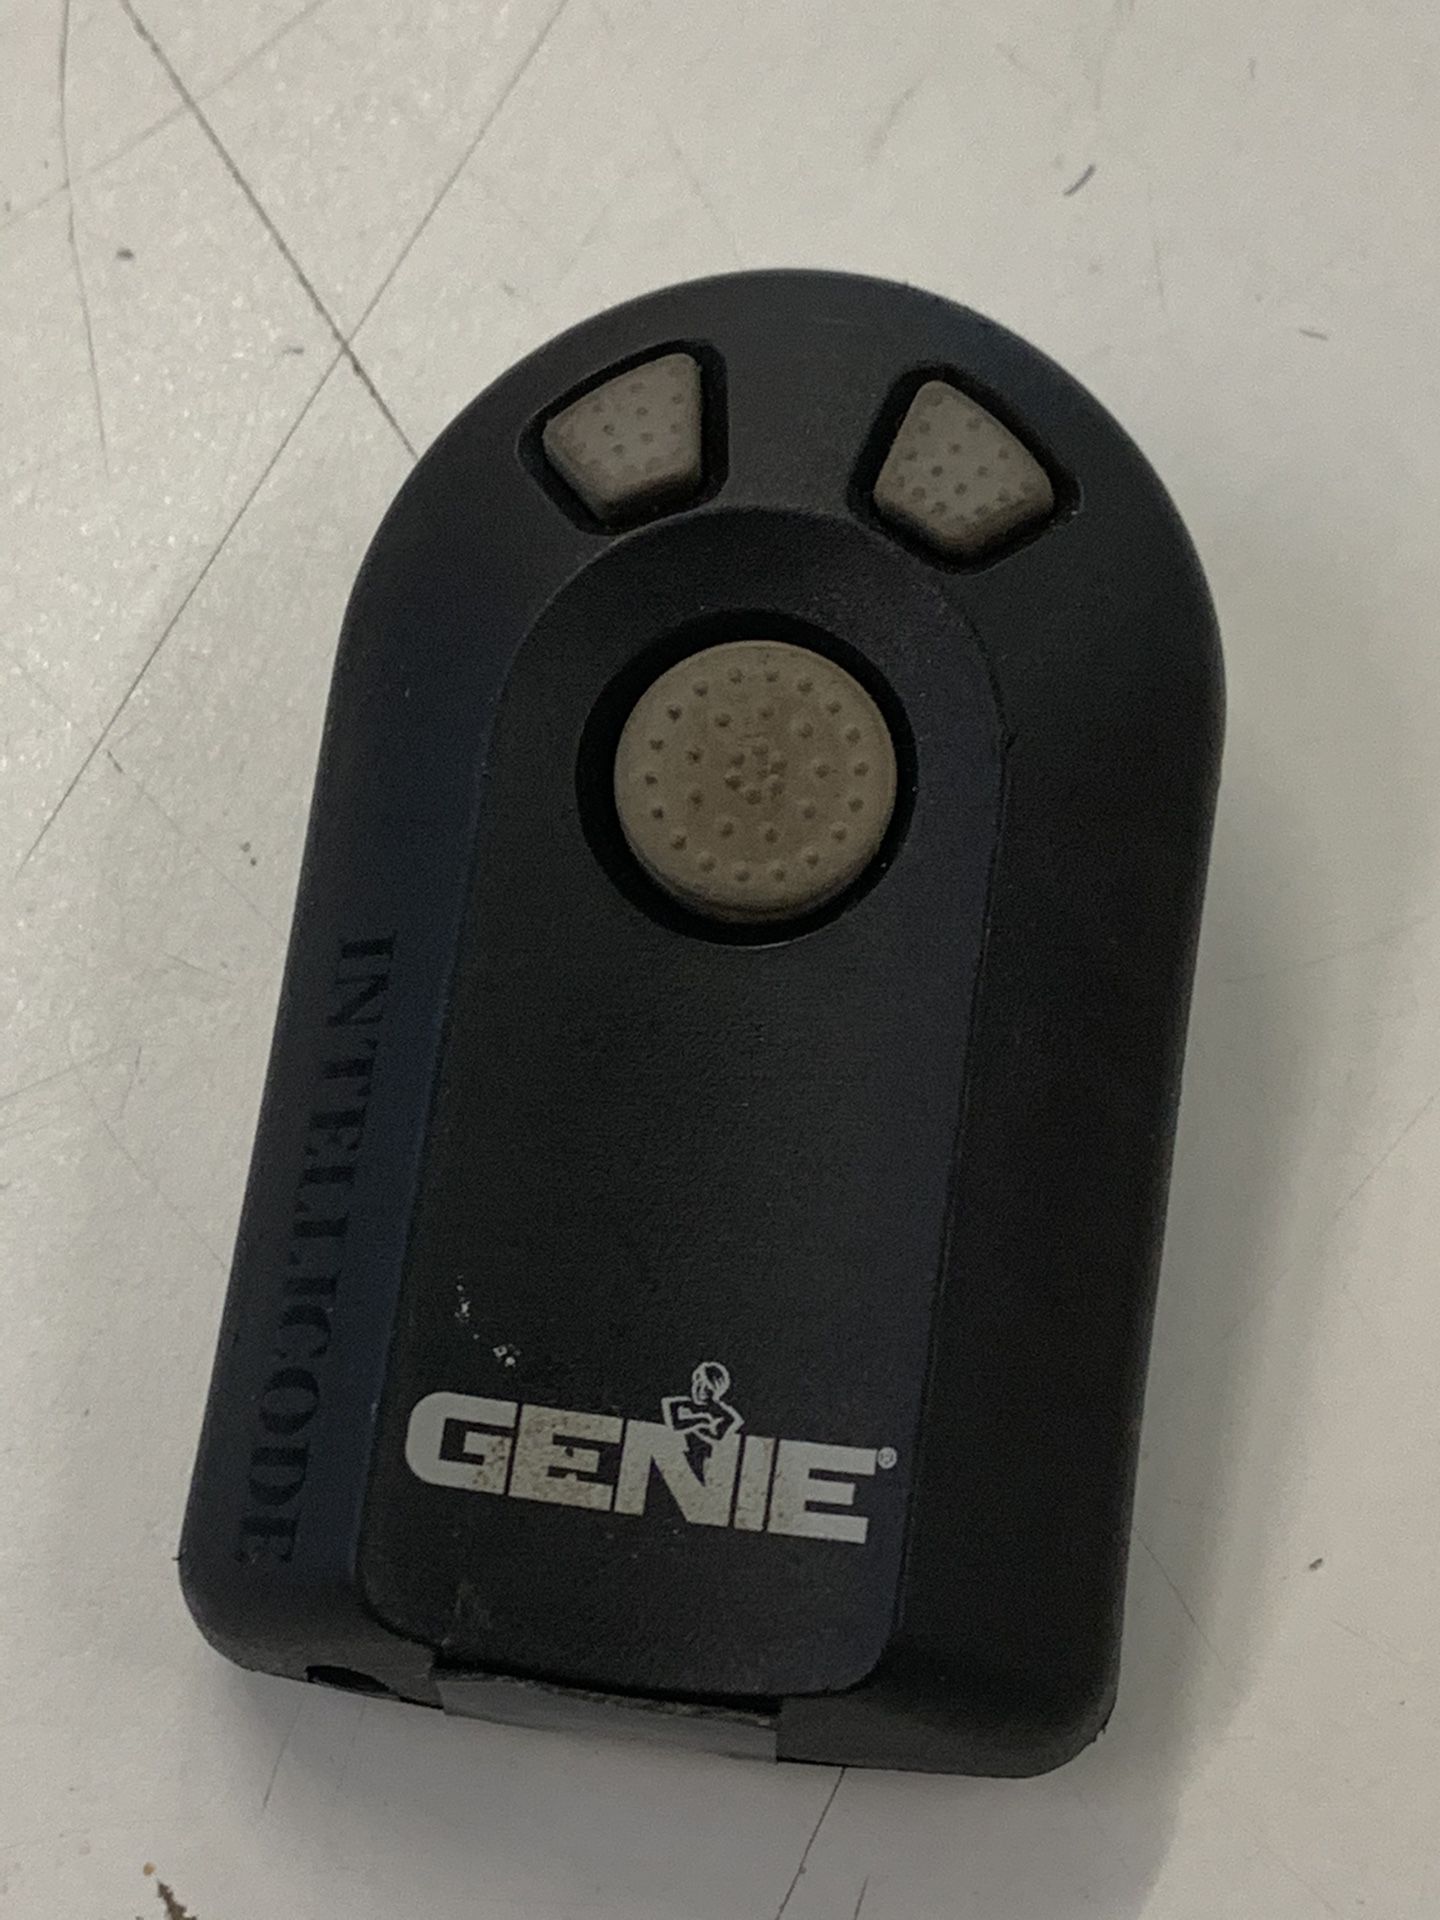 Genie garage door opener remote